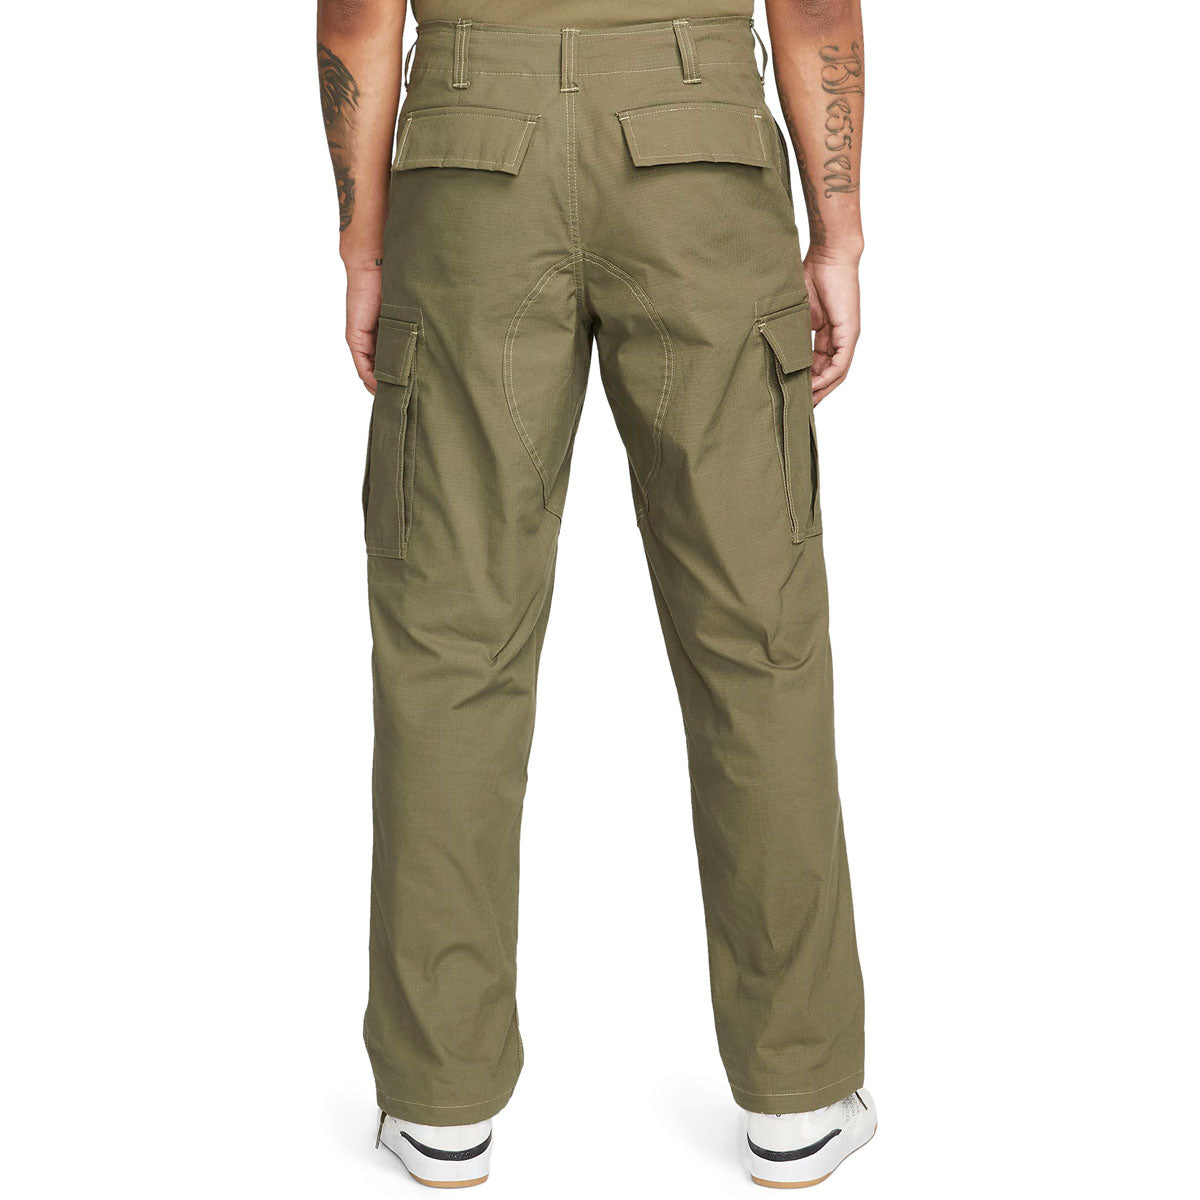 Nike SB Kearny Cargo Pants - Medium Olive/White image 2